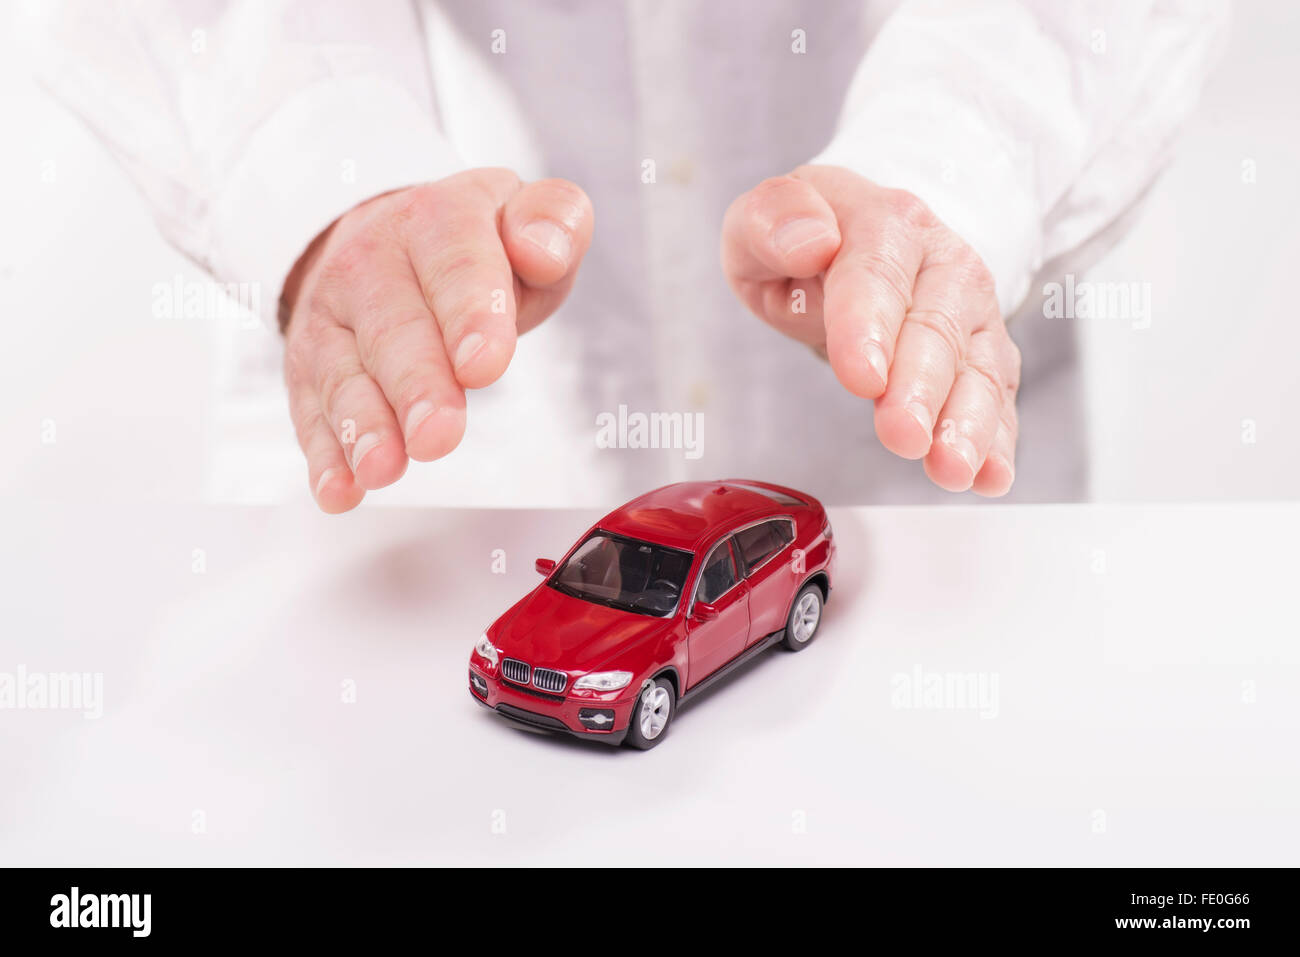 Les mains sont tenues de manière protectrice sur une voiture. Banque D'Images